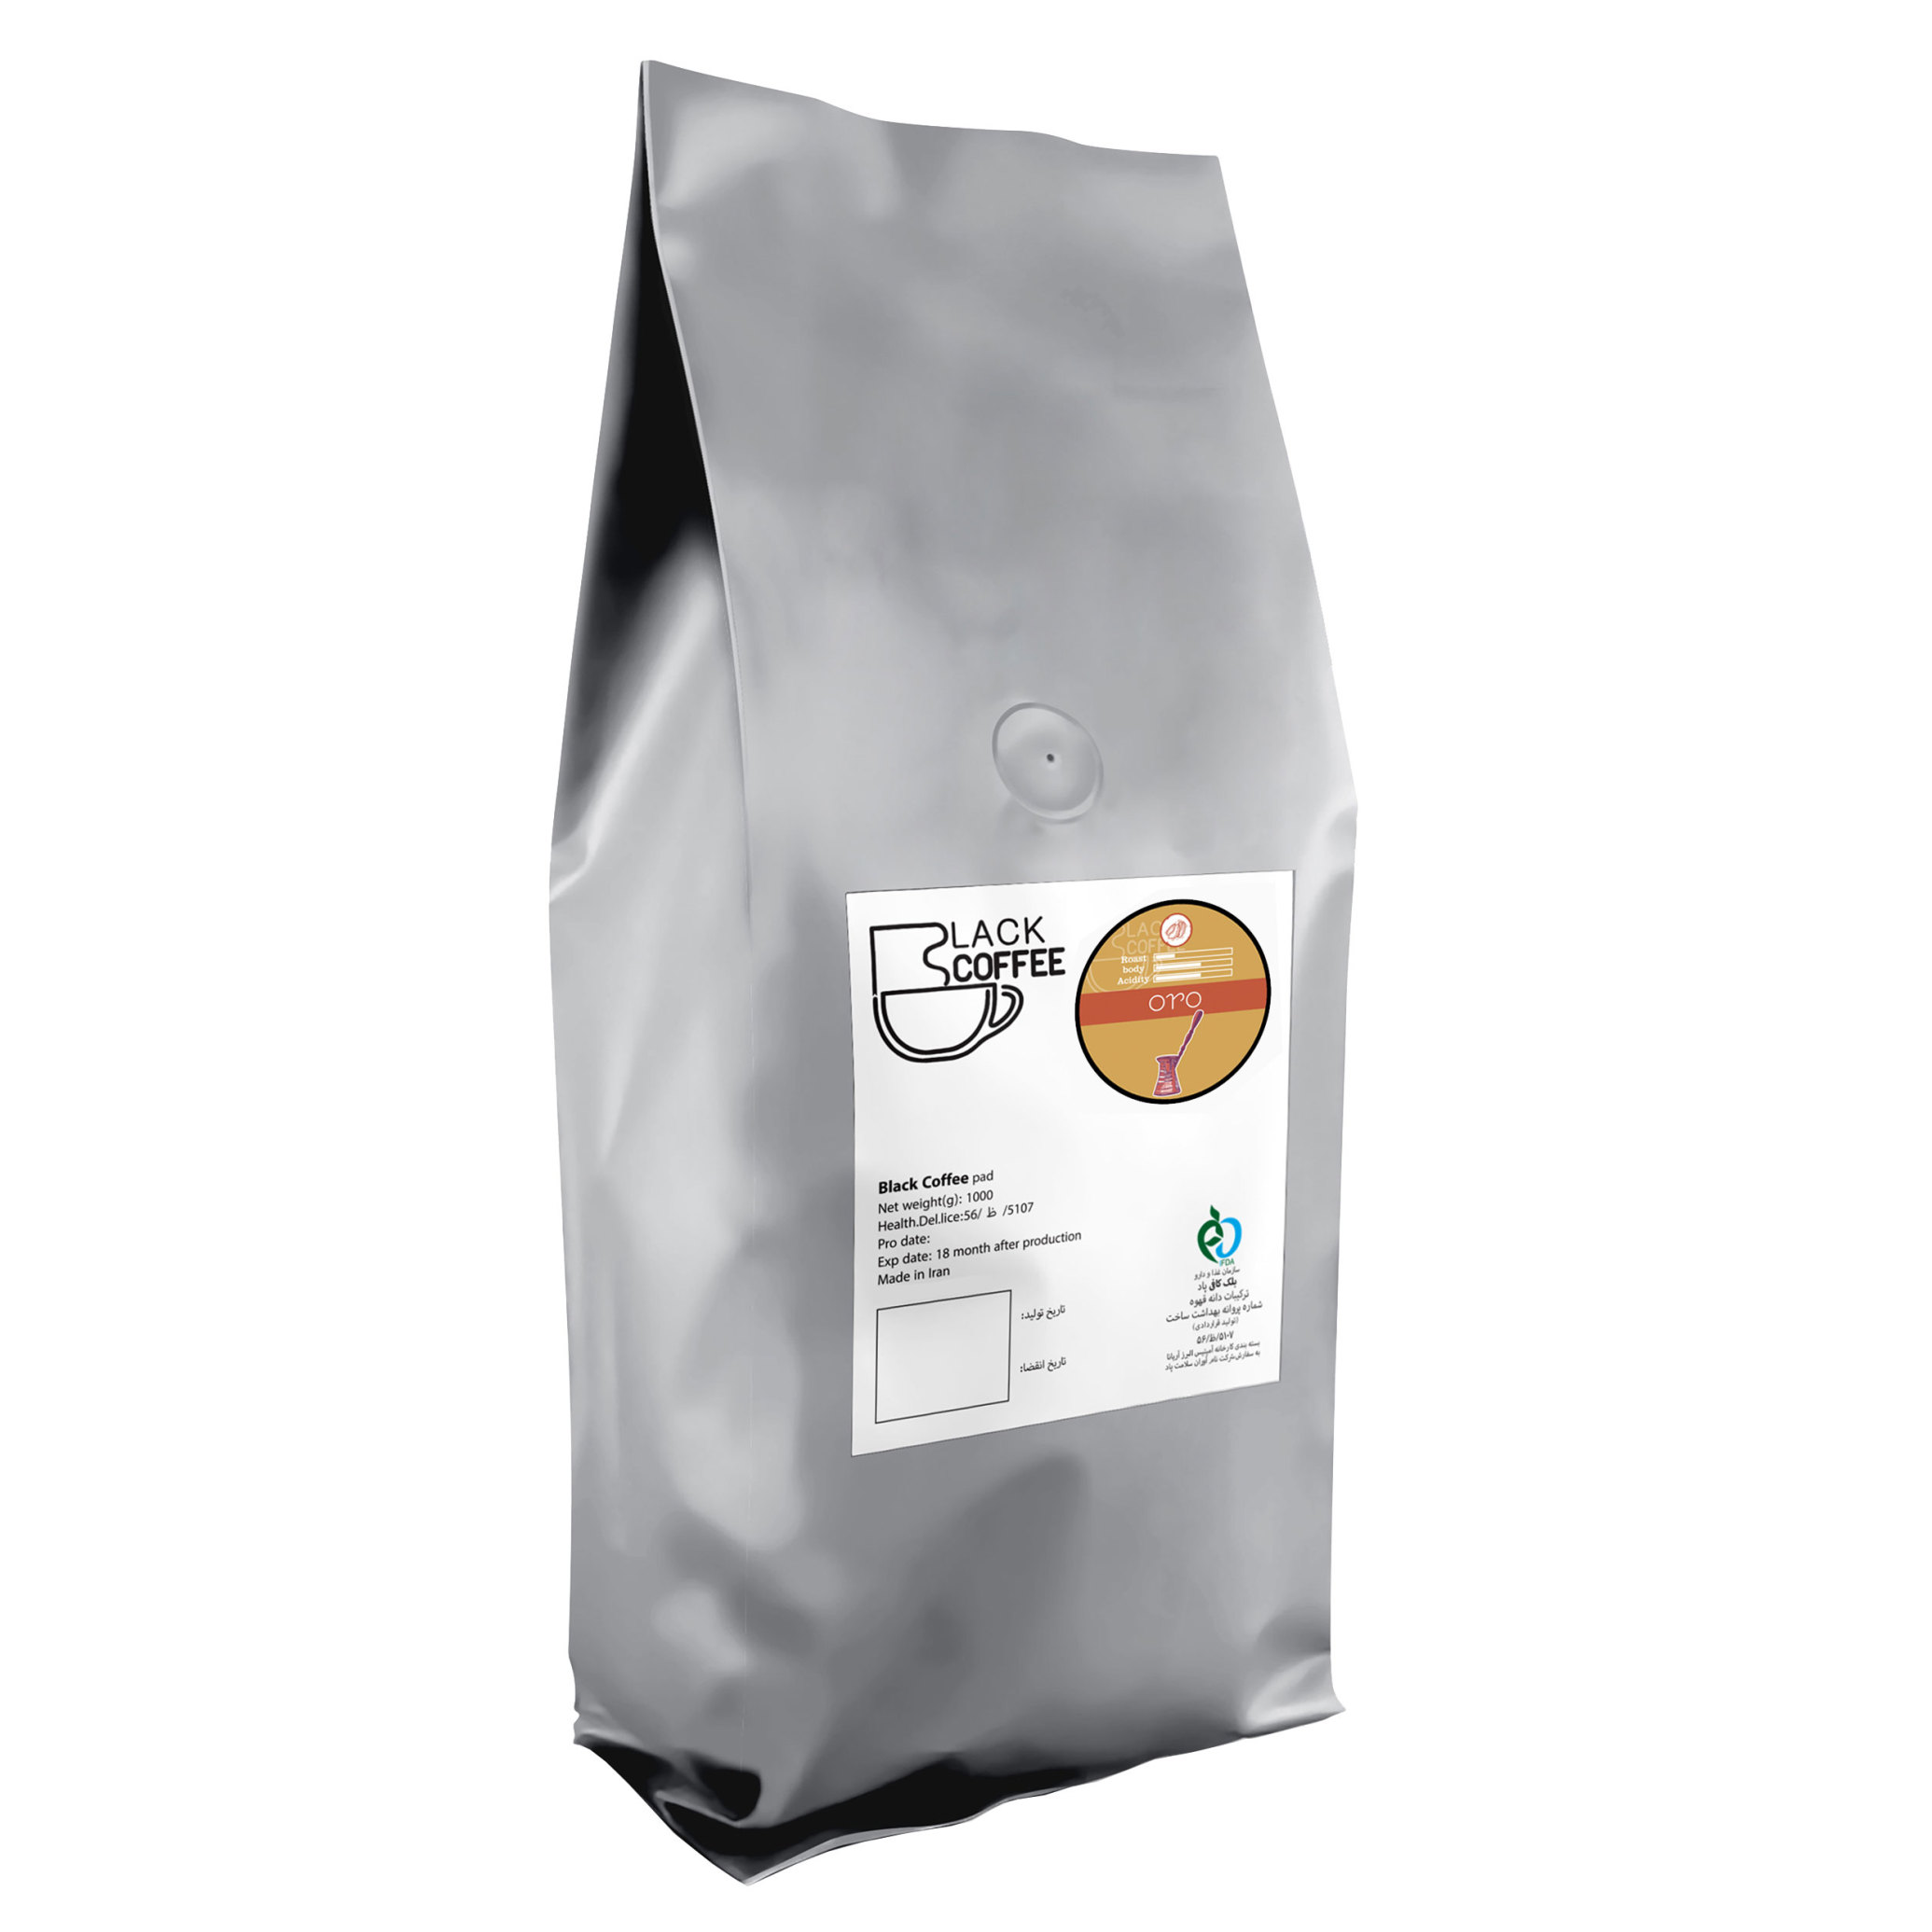  دانه قهوه ارو | Oro Coffee beans یک کیلو گرم | دانه قهوه کیلویی 